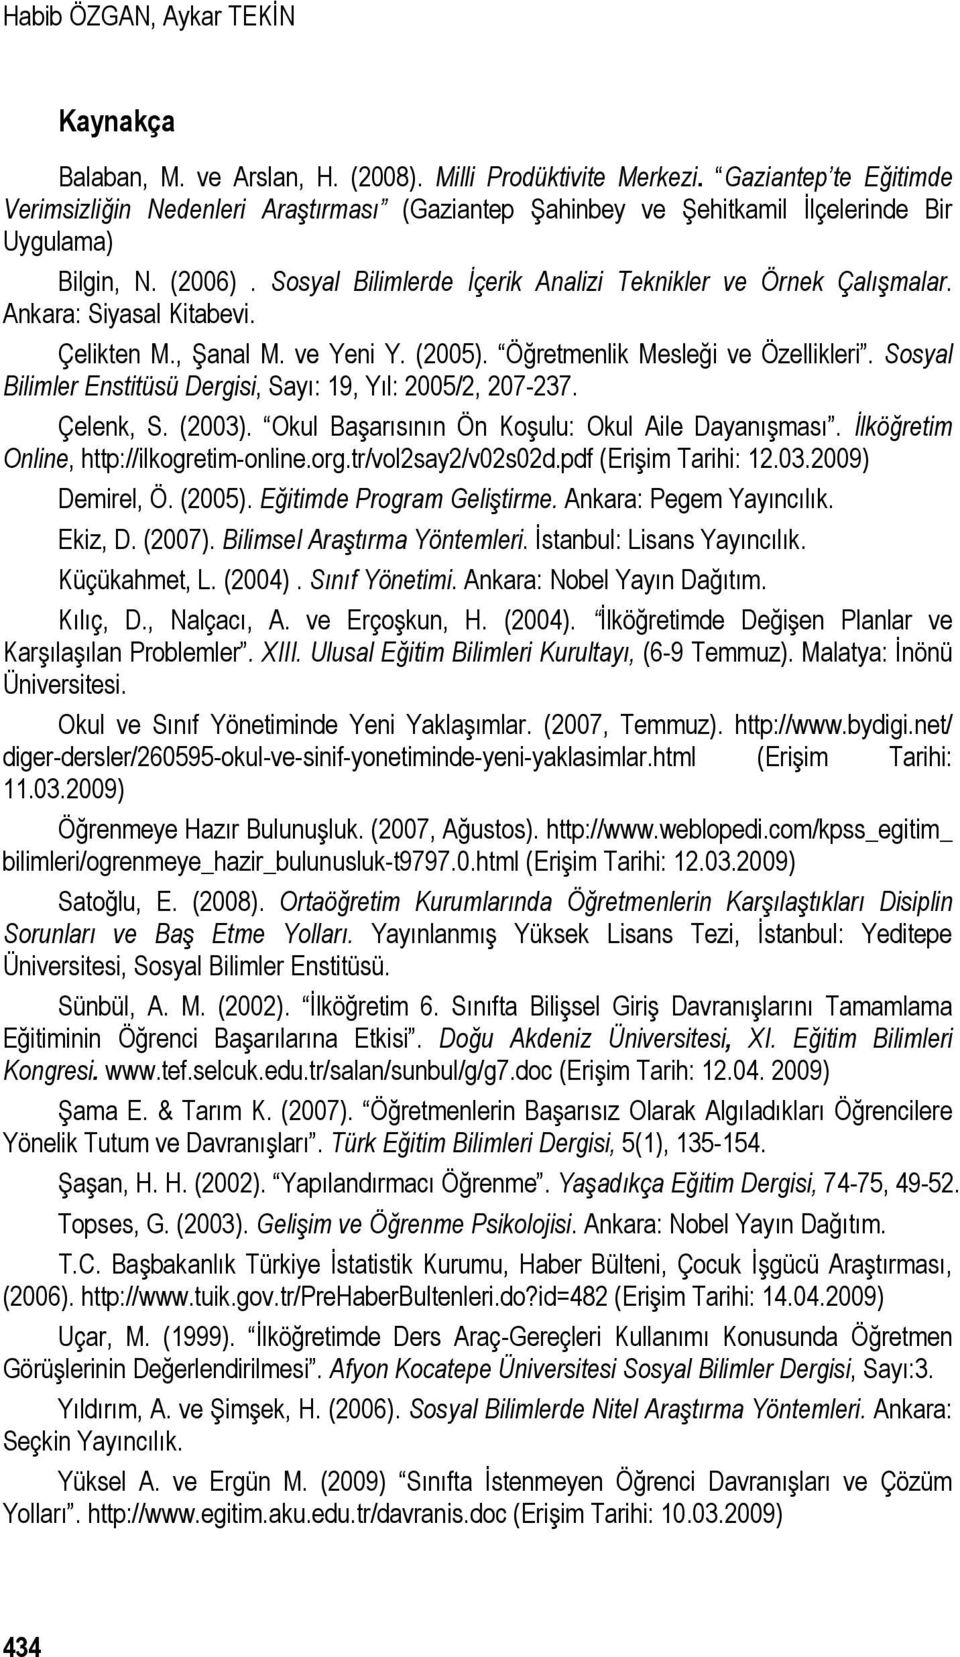 Ankara: Siyasal Kitabevi. Çelikten M., Şanal M. ve Yeni Y. (2005). Öğretmenlik Mesleği ve Özellikleri. Sosyal Bilimler Enstitüsü Dergisi, Sayı: 19, Yıl: 2005/2, 207-237. Çelenk, S. (2003).